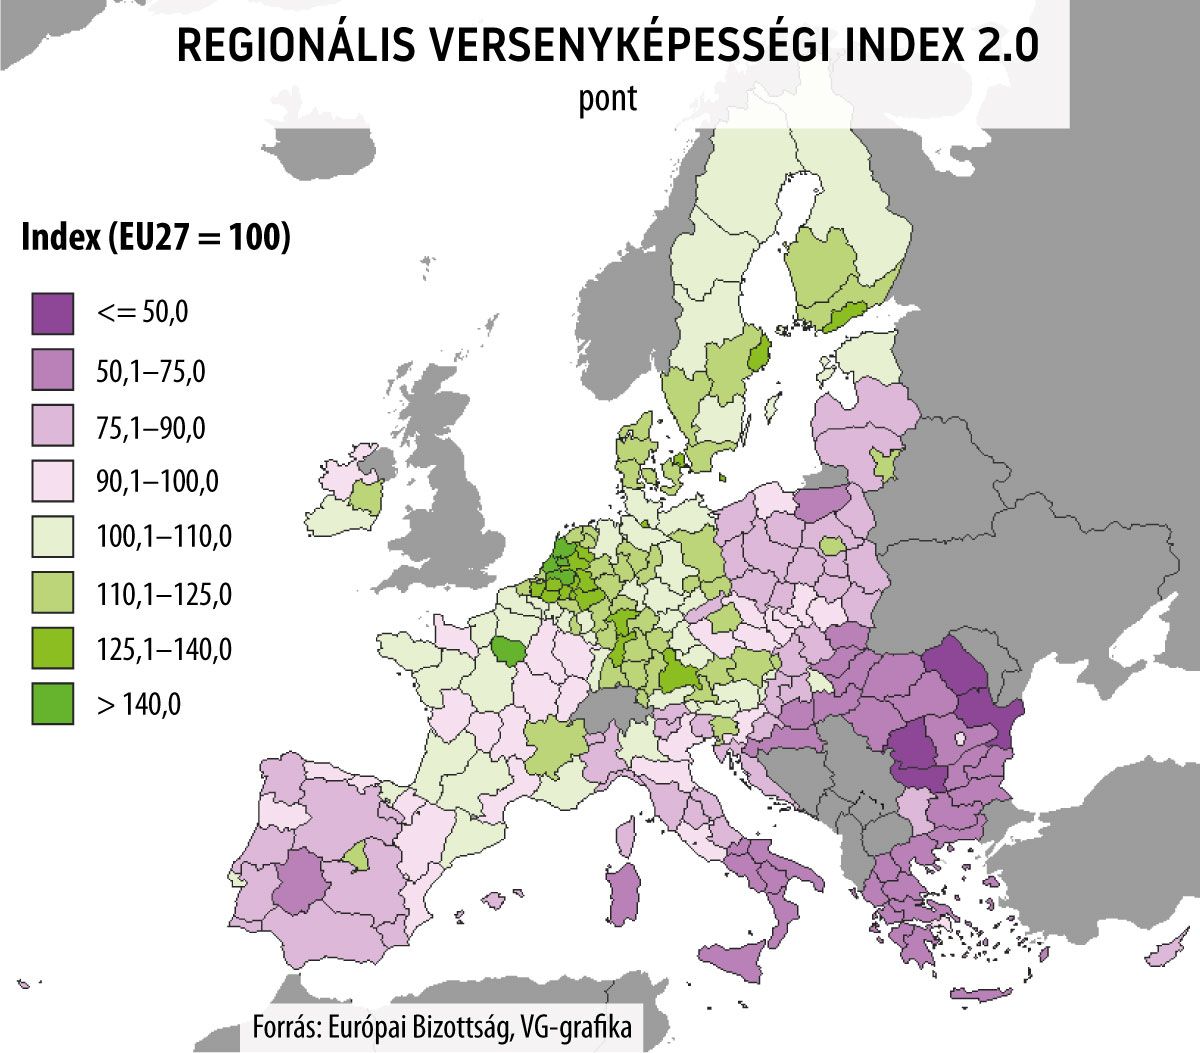 Regionális versenyképességi index 2.0
